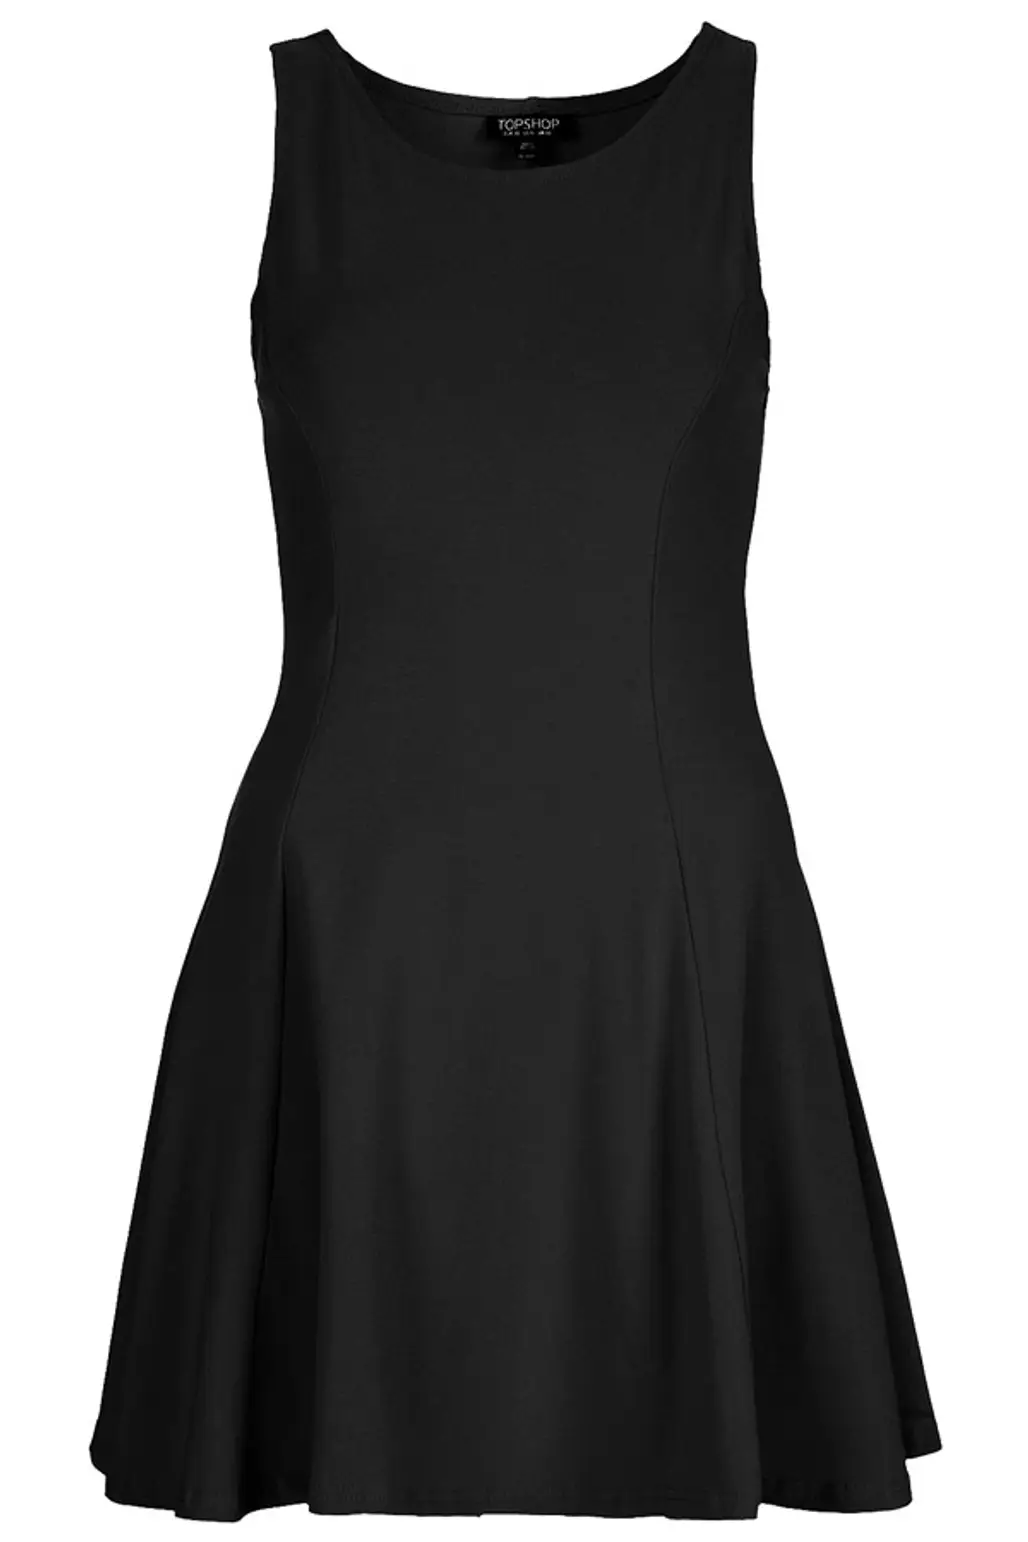 The Plain Black Dress